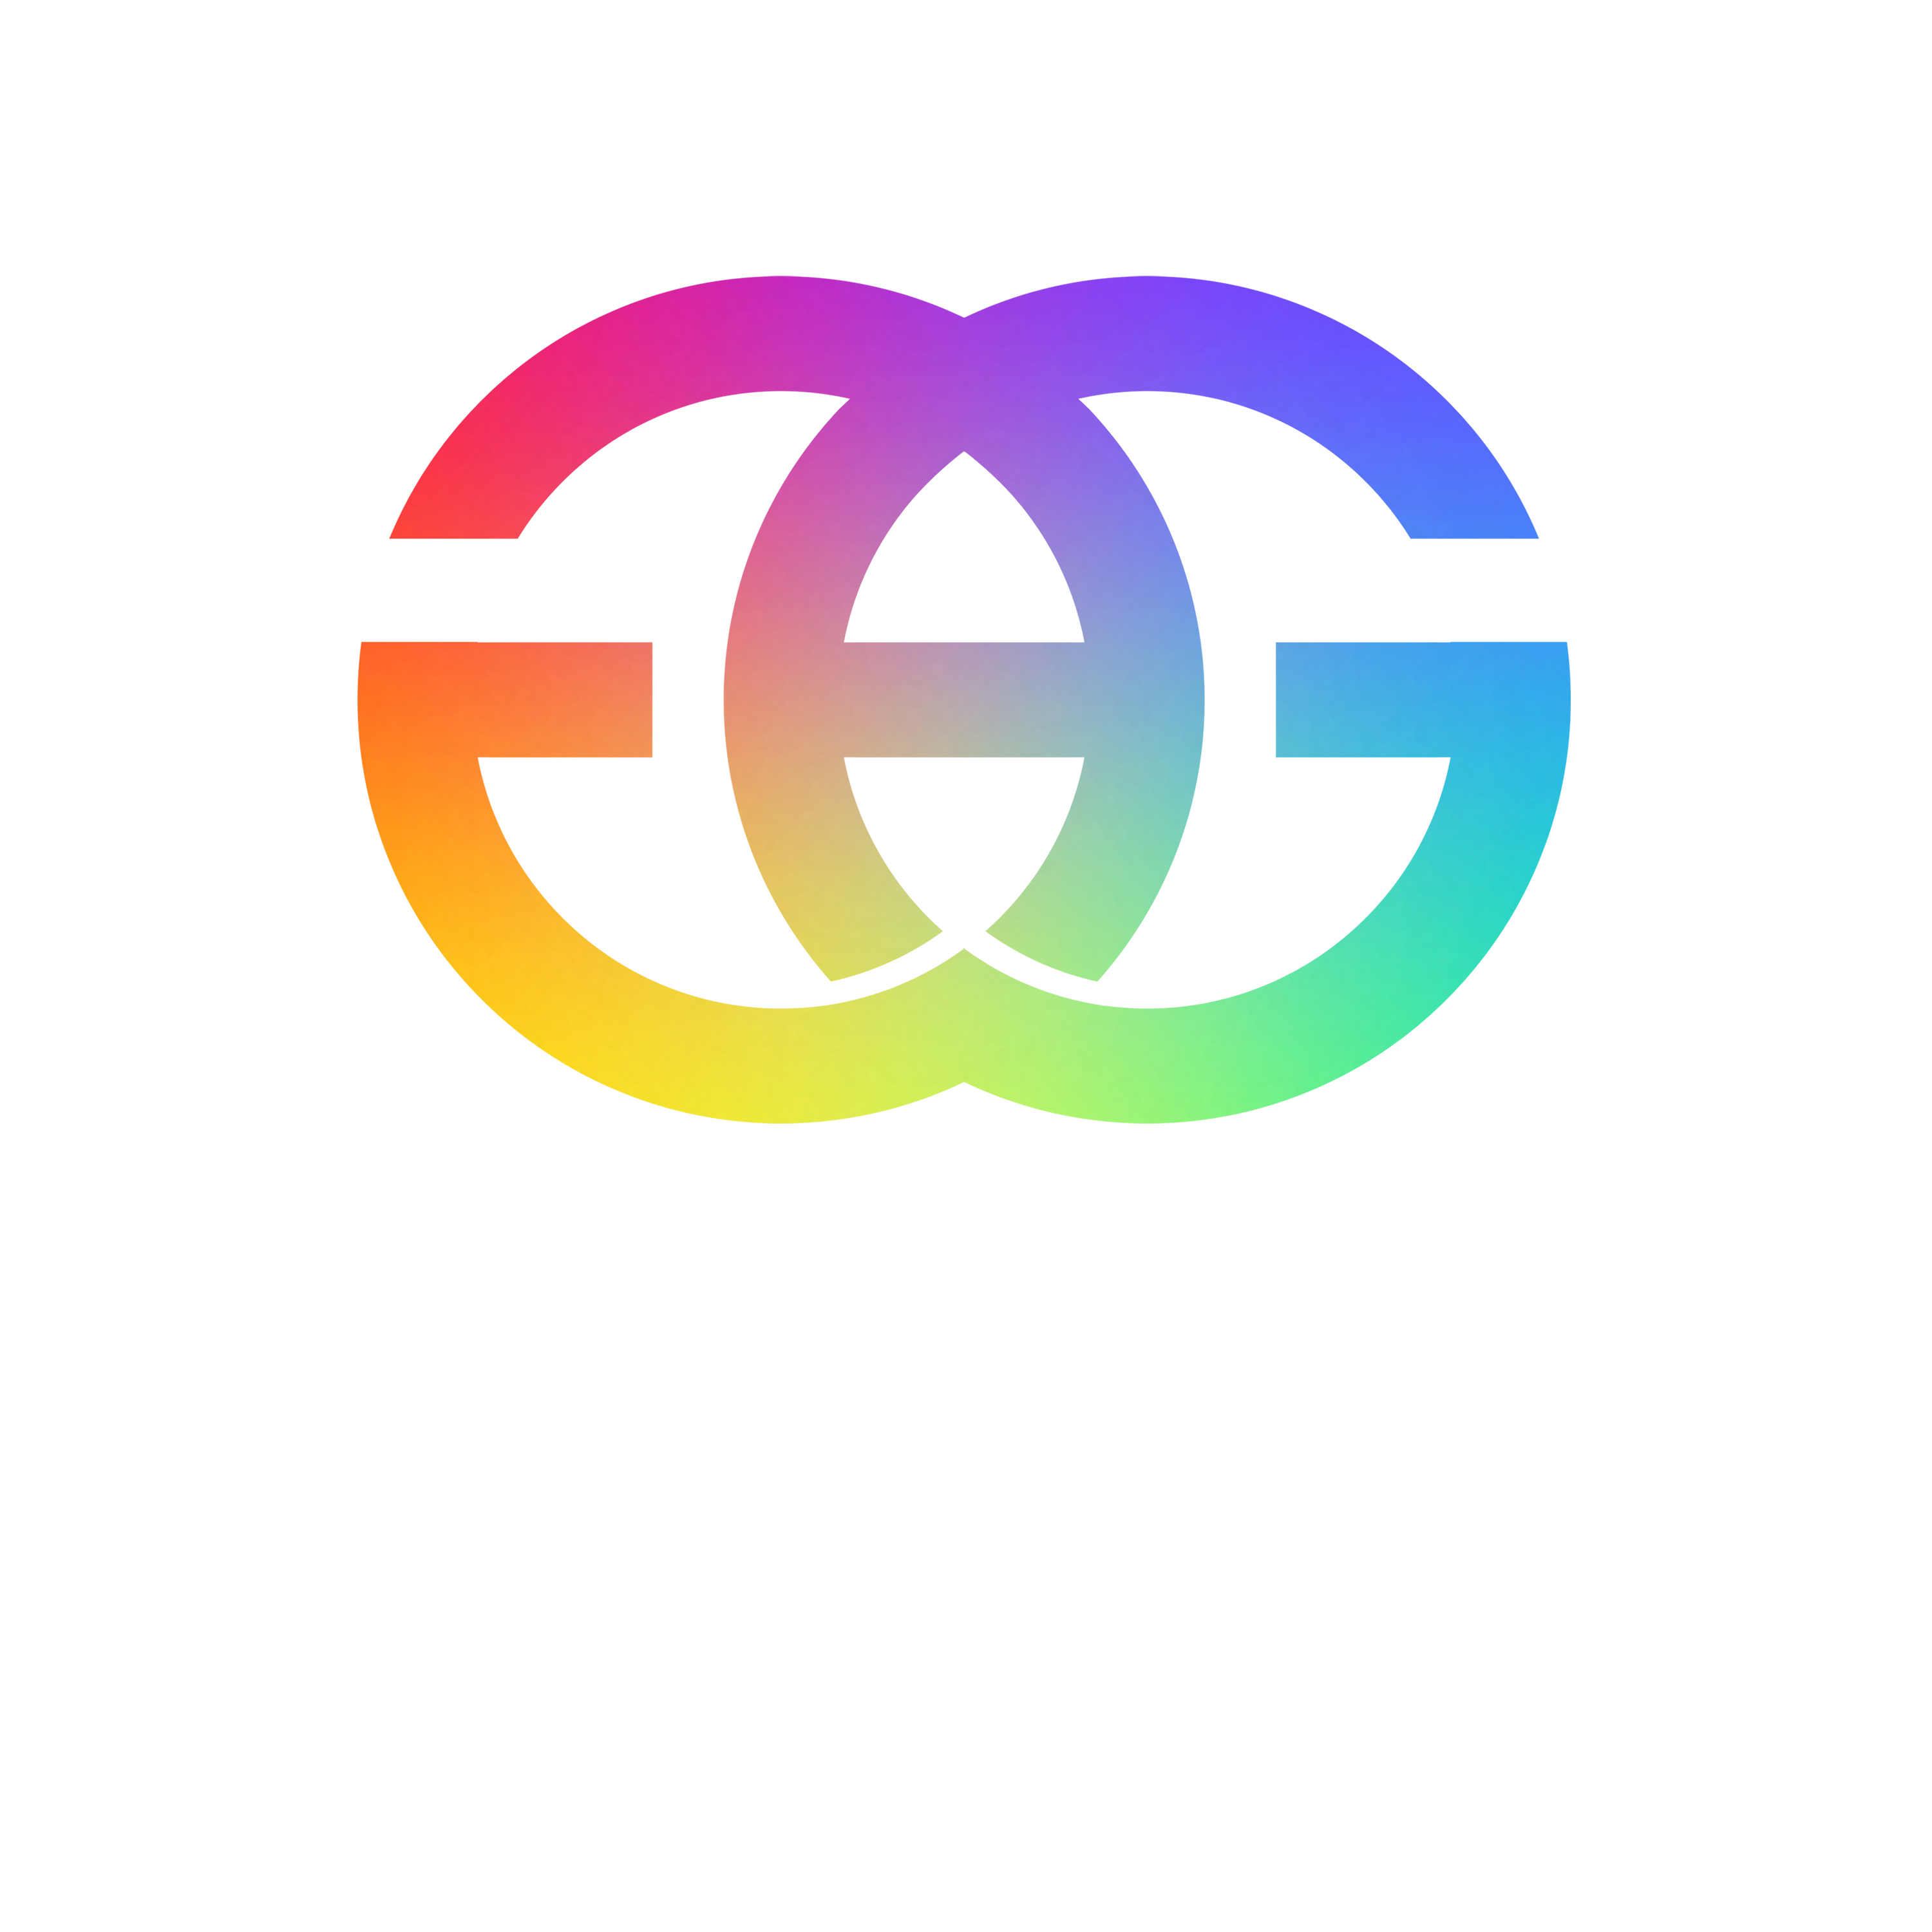 Gays Against Groomers